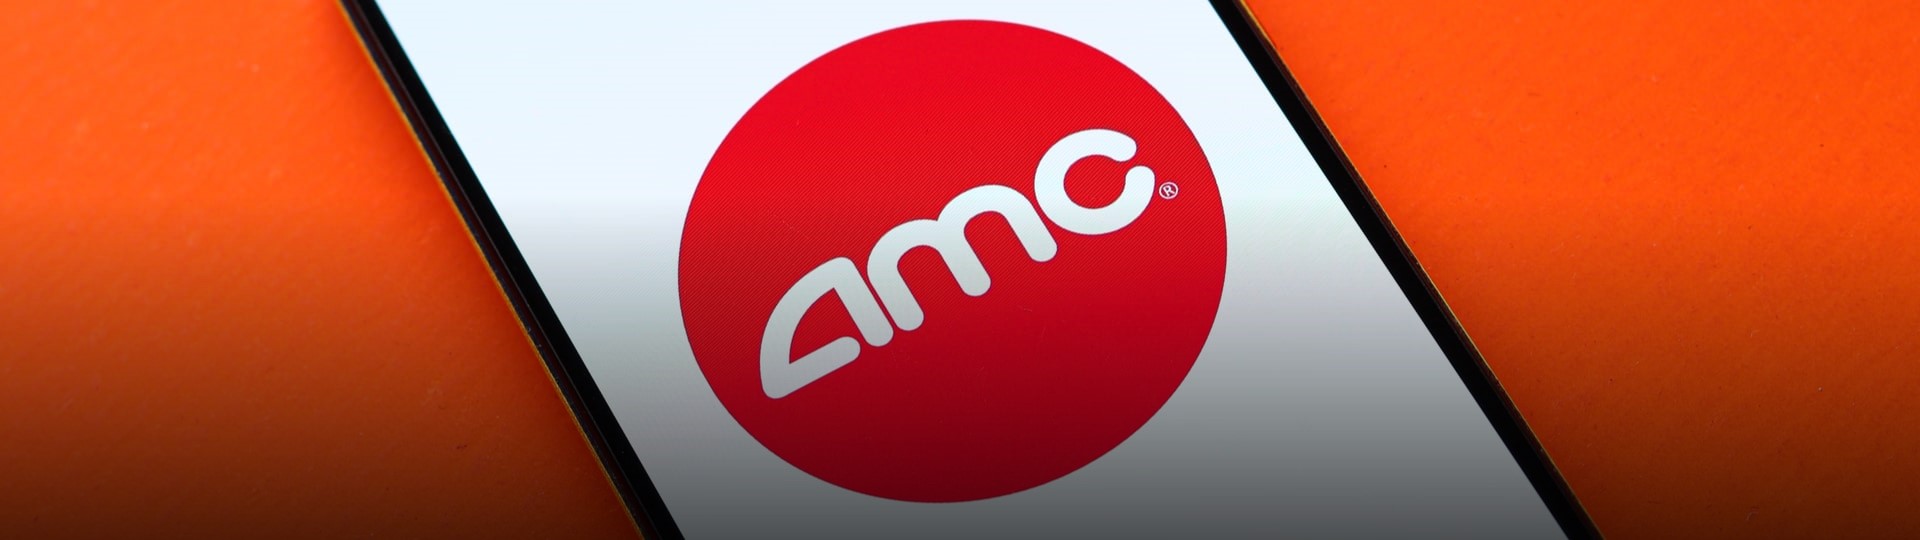 Provozovatel kin AMC prodal spekulantům ze sociálních sítí draho další akcie